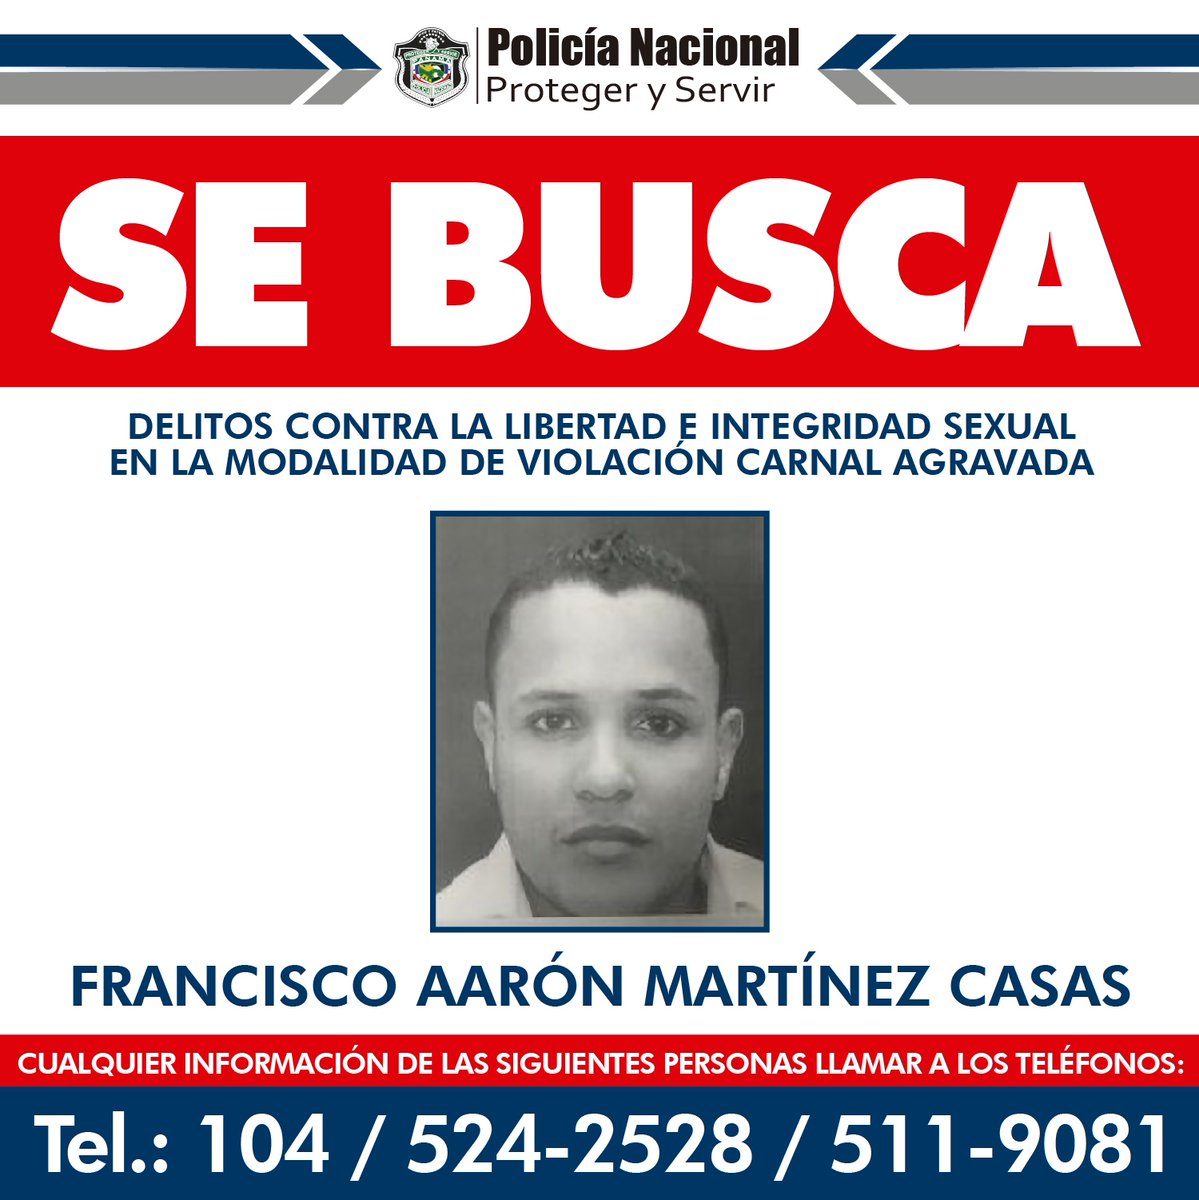 La @ProtegeryServir  está solicitando colaboración para ubicar a Francisco Aaron Martínez Casas, el mismo es requerido por el delito Contra la Libertad e Integridad Sexual, en la modalidad de Violación Carnal Agravada.

#RPCRadio